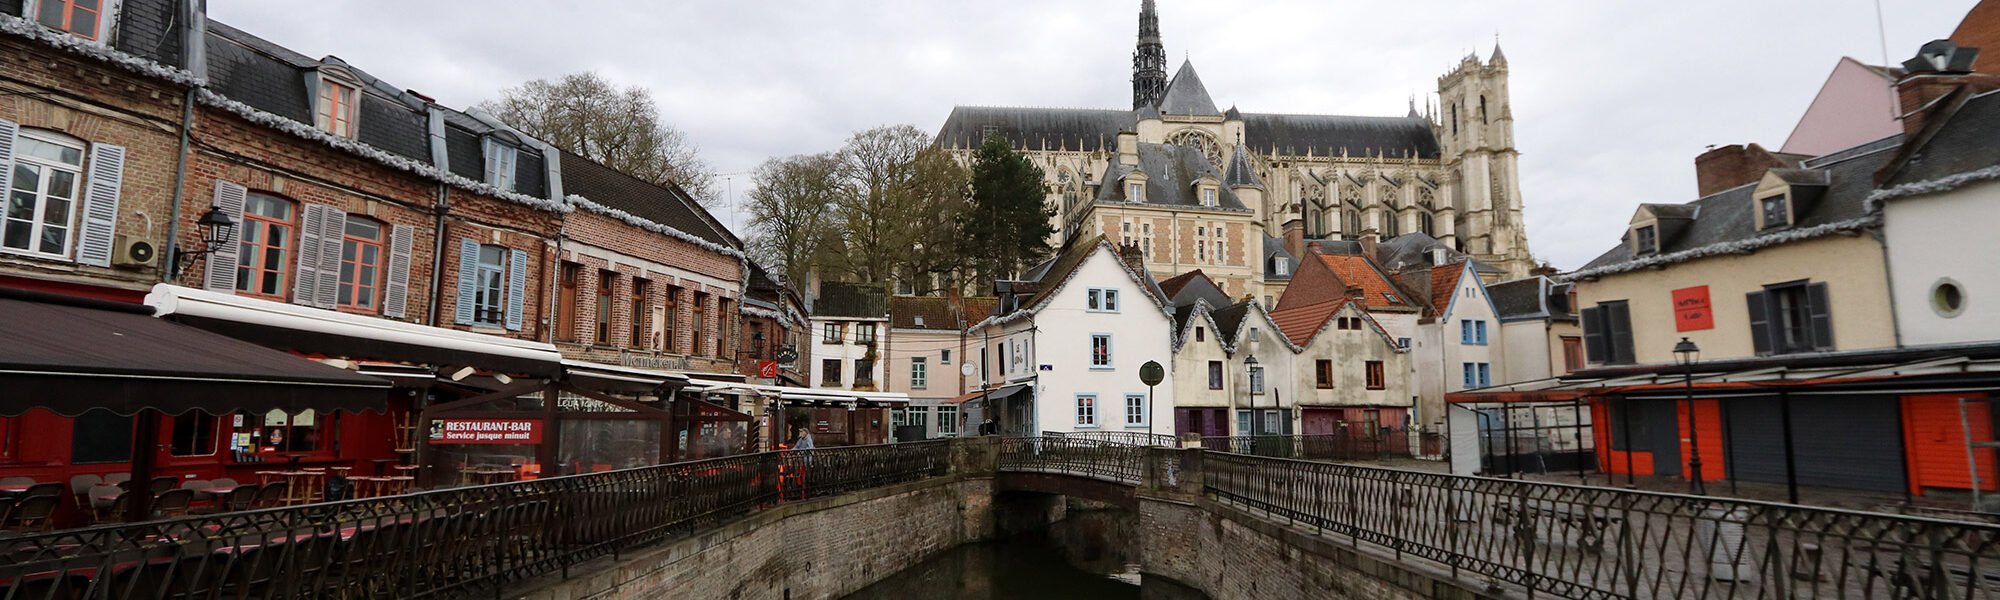 Amiens - Frankrijk